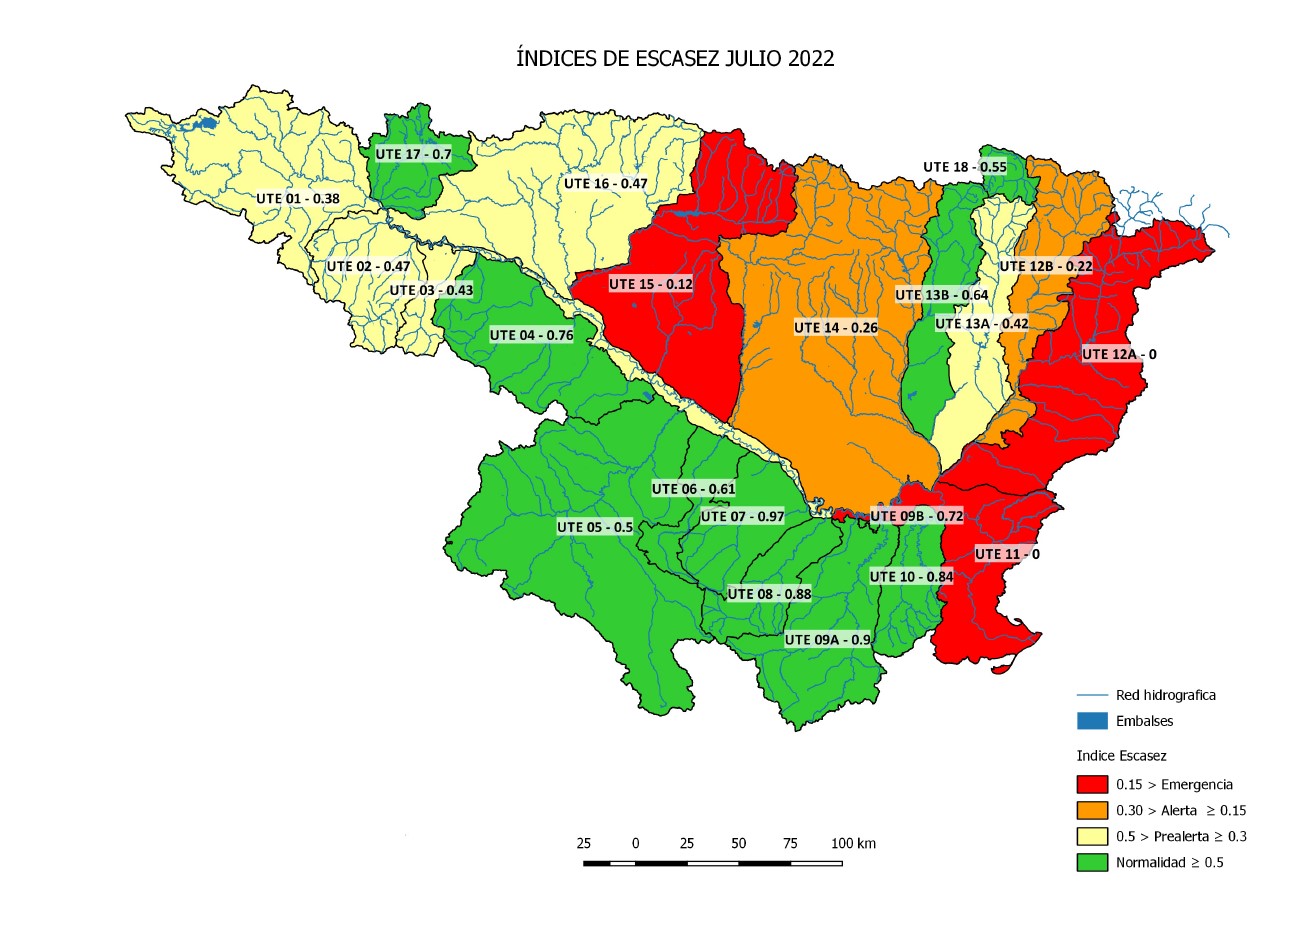 Imagen noticia - Informe índices de sequía a 31 de julio de 2022